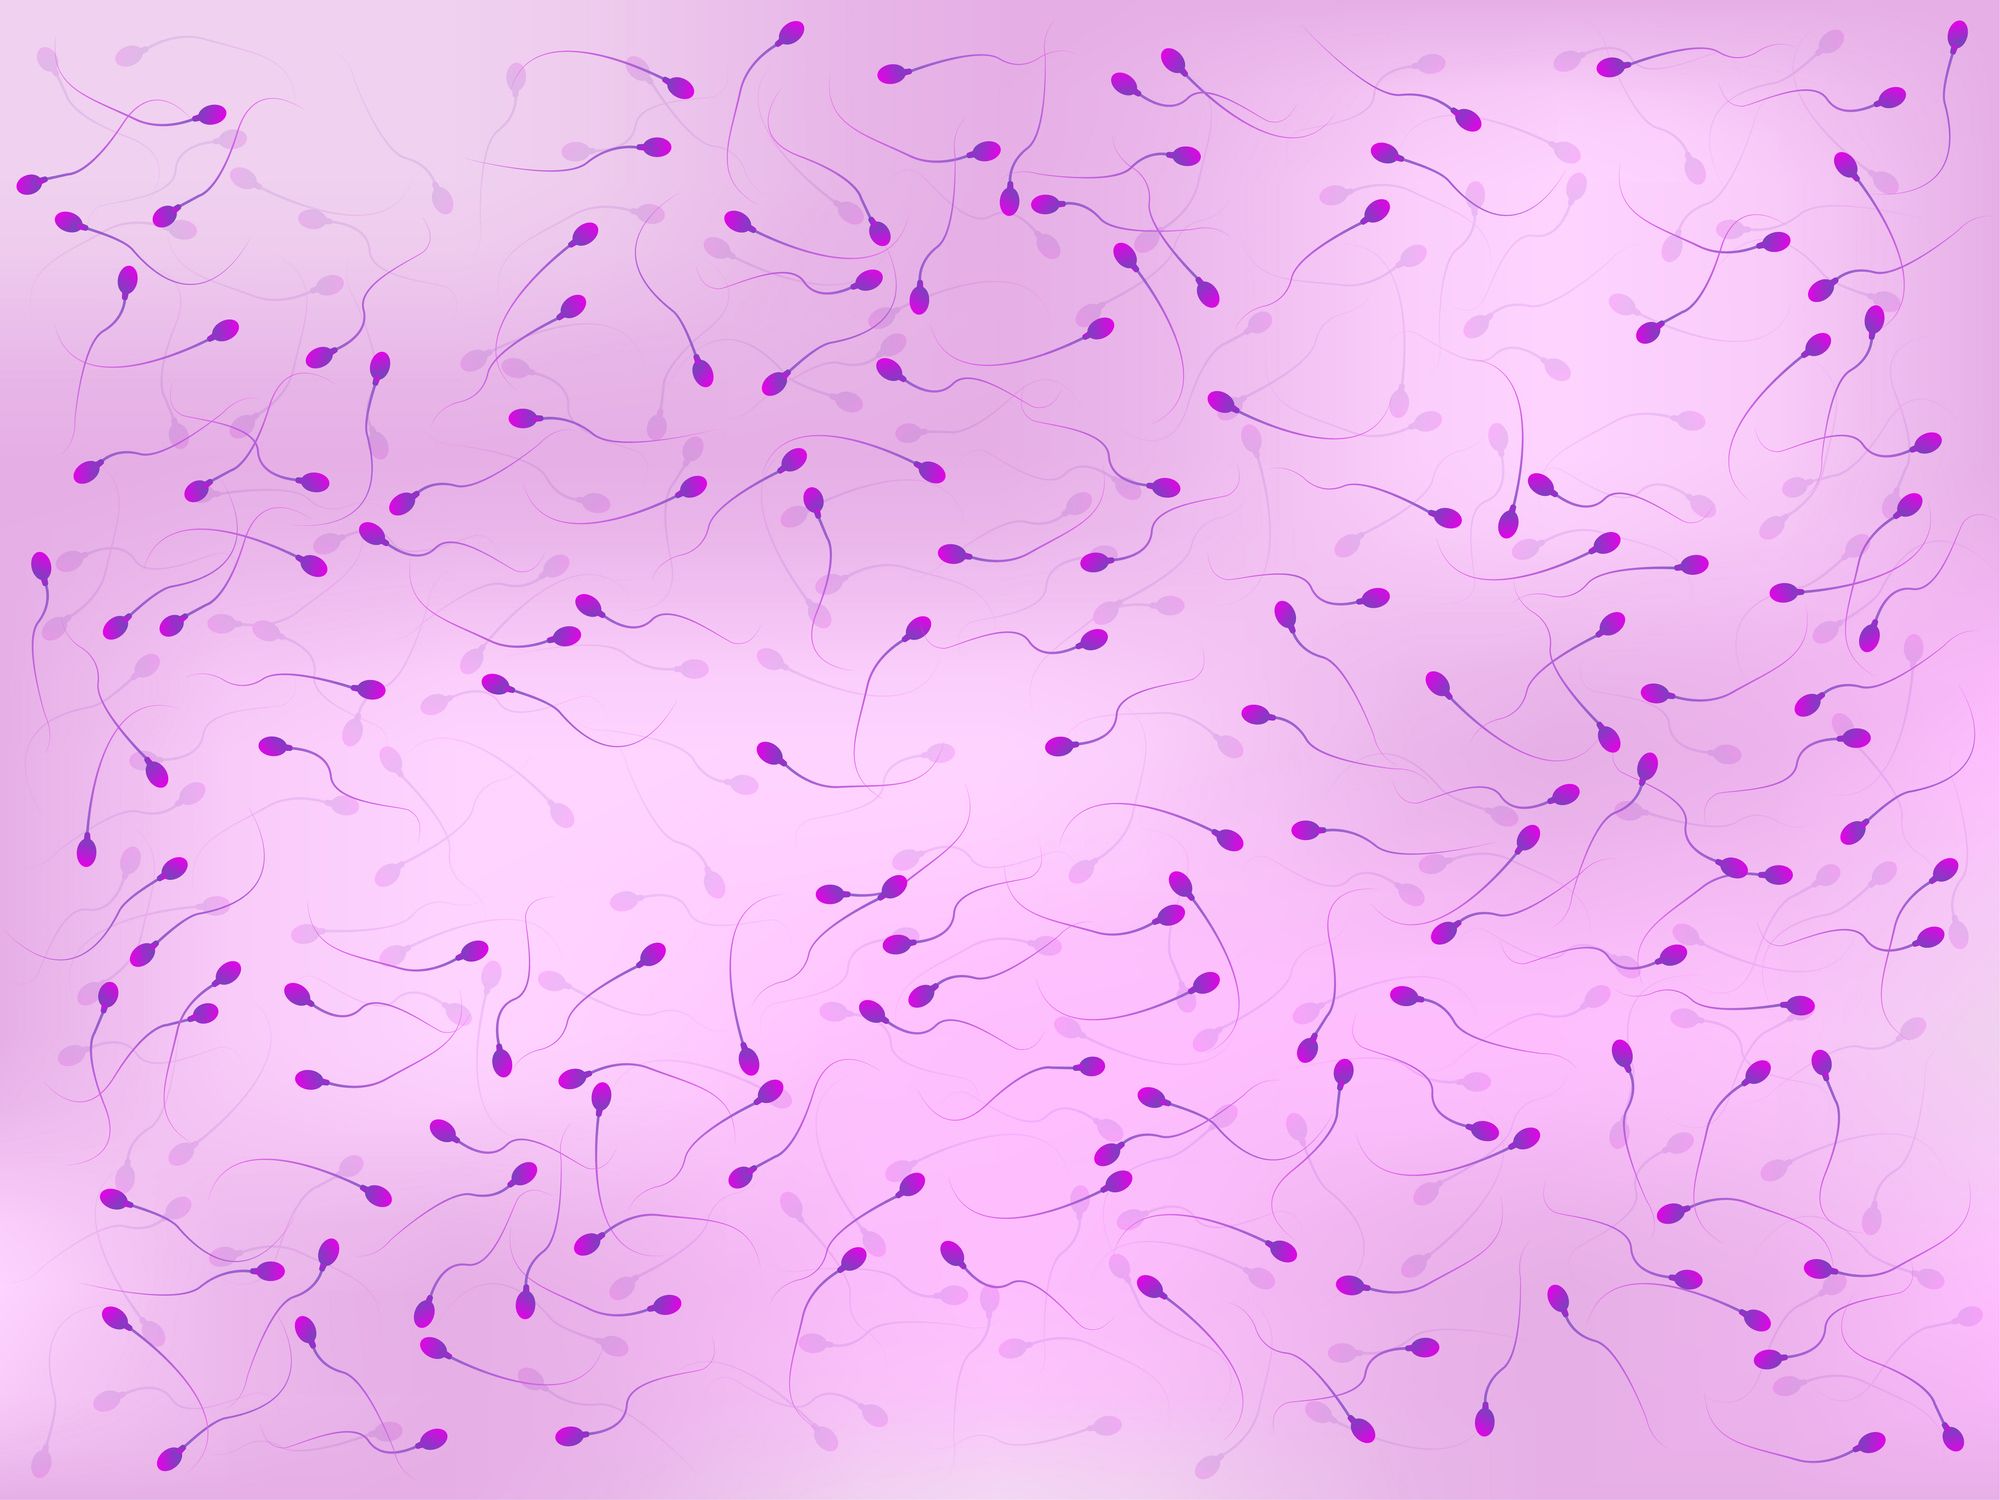 Spermien auf lila Hintergrund